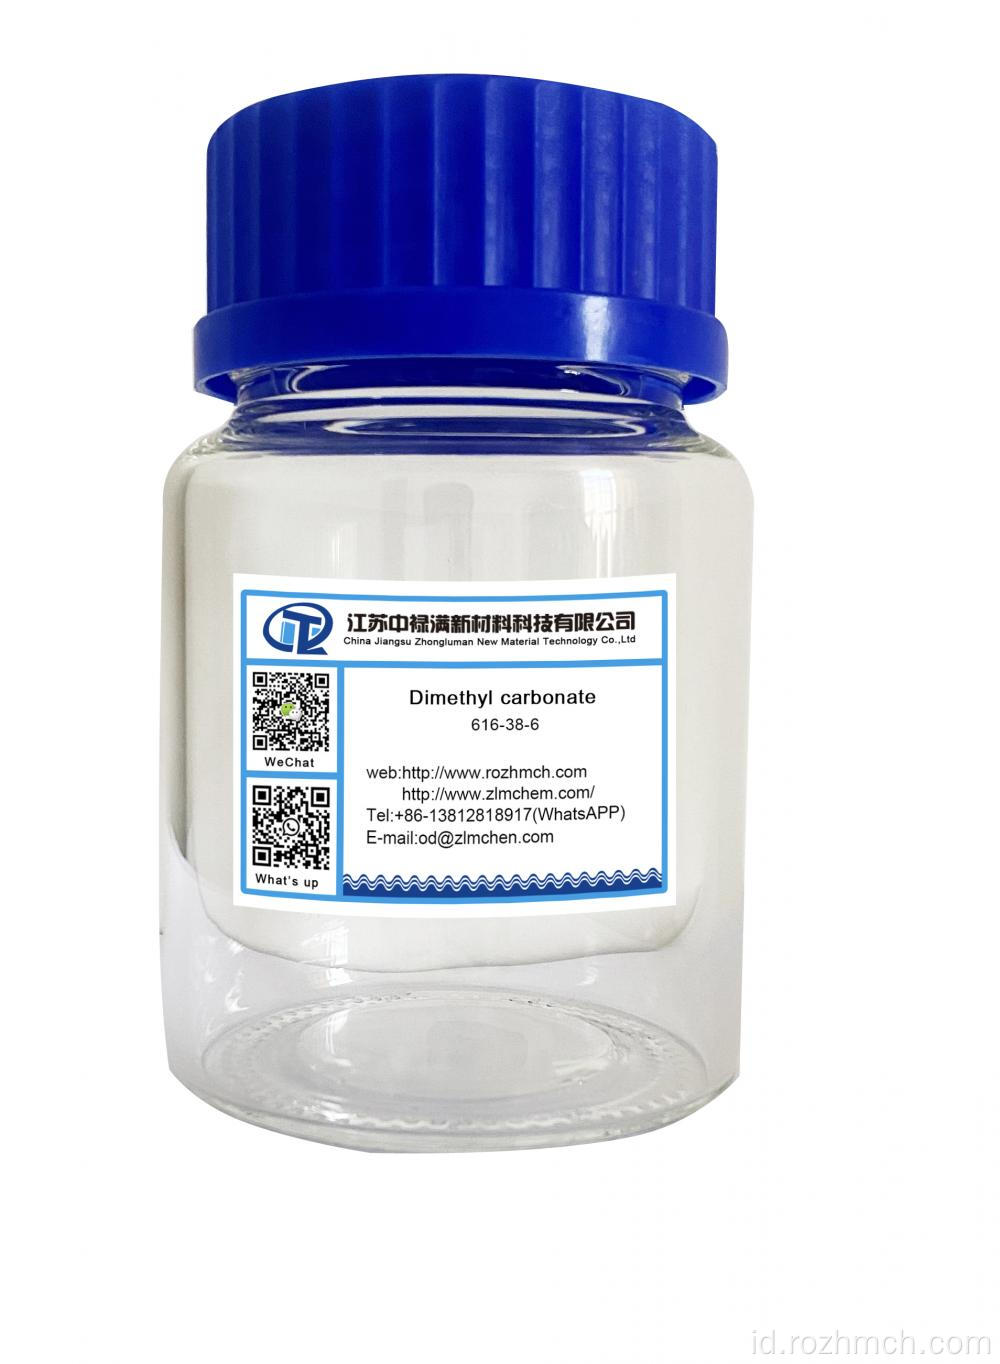 Dimethyl Carbonate DMC CAS No 616-38-6